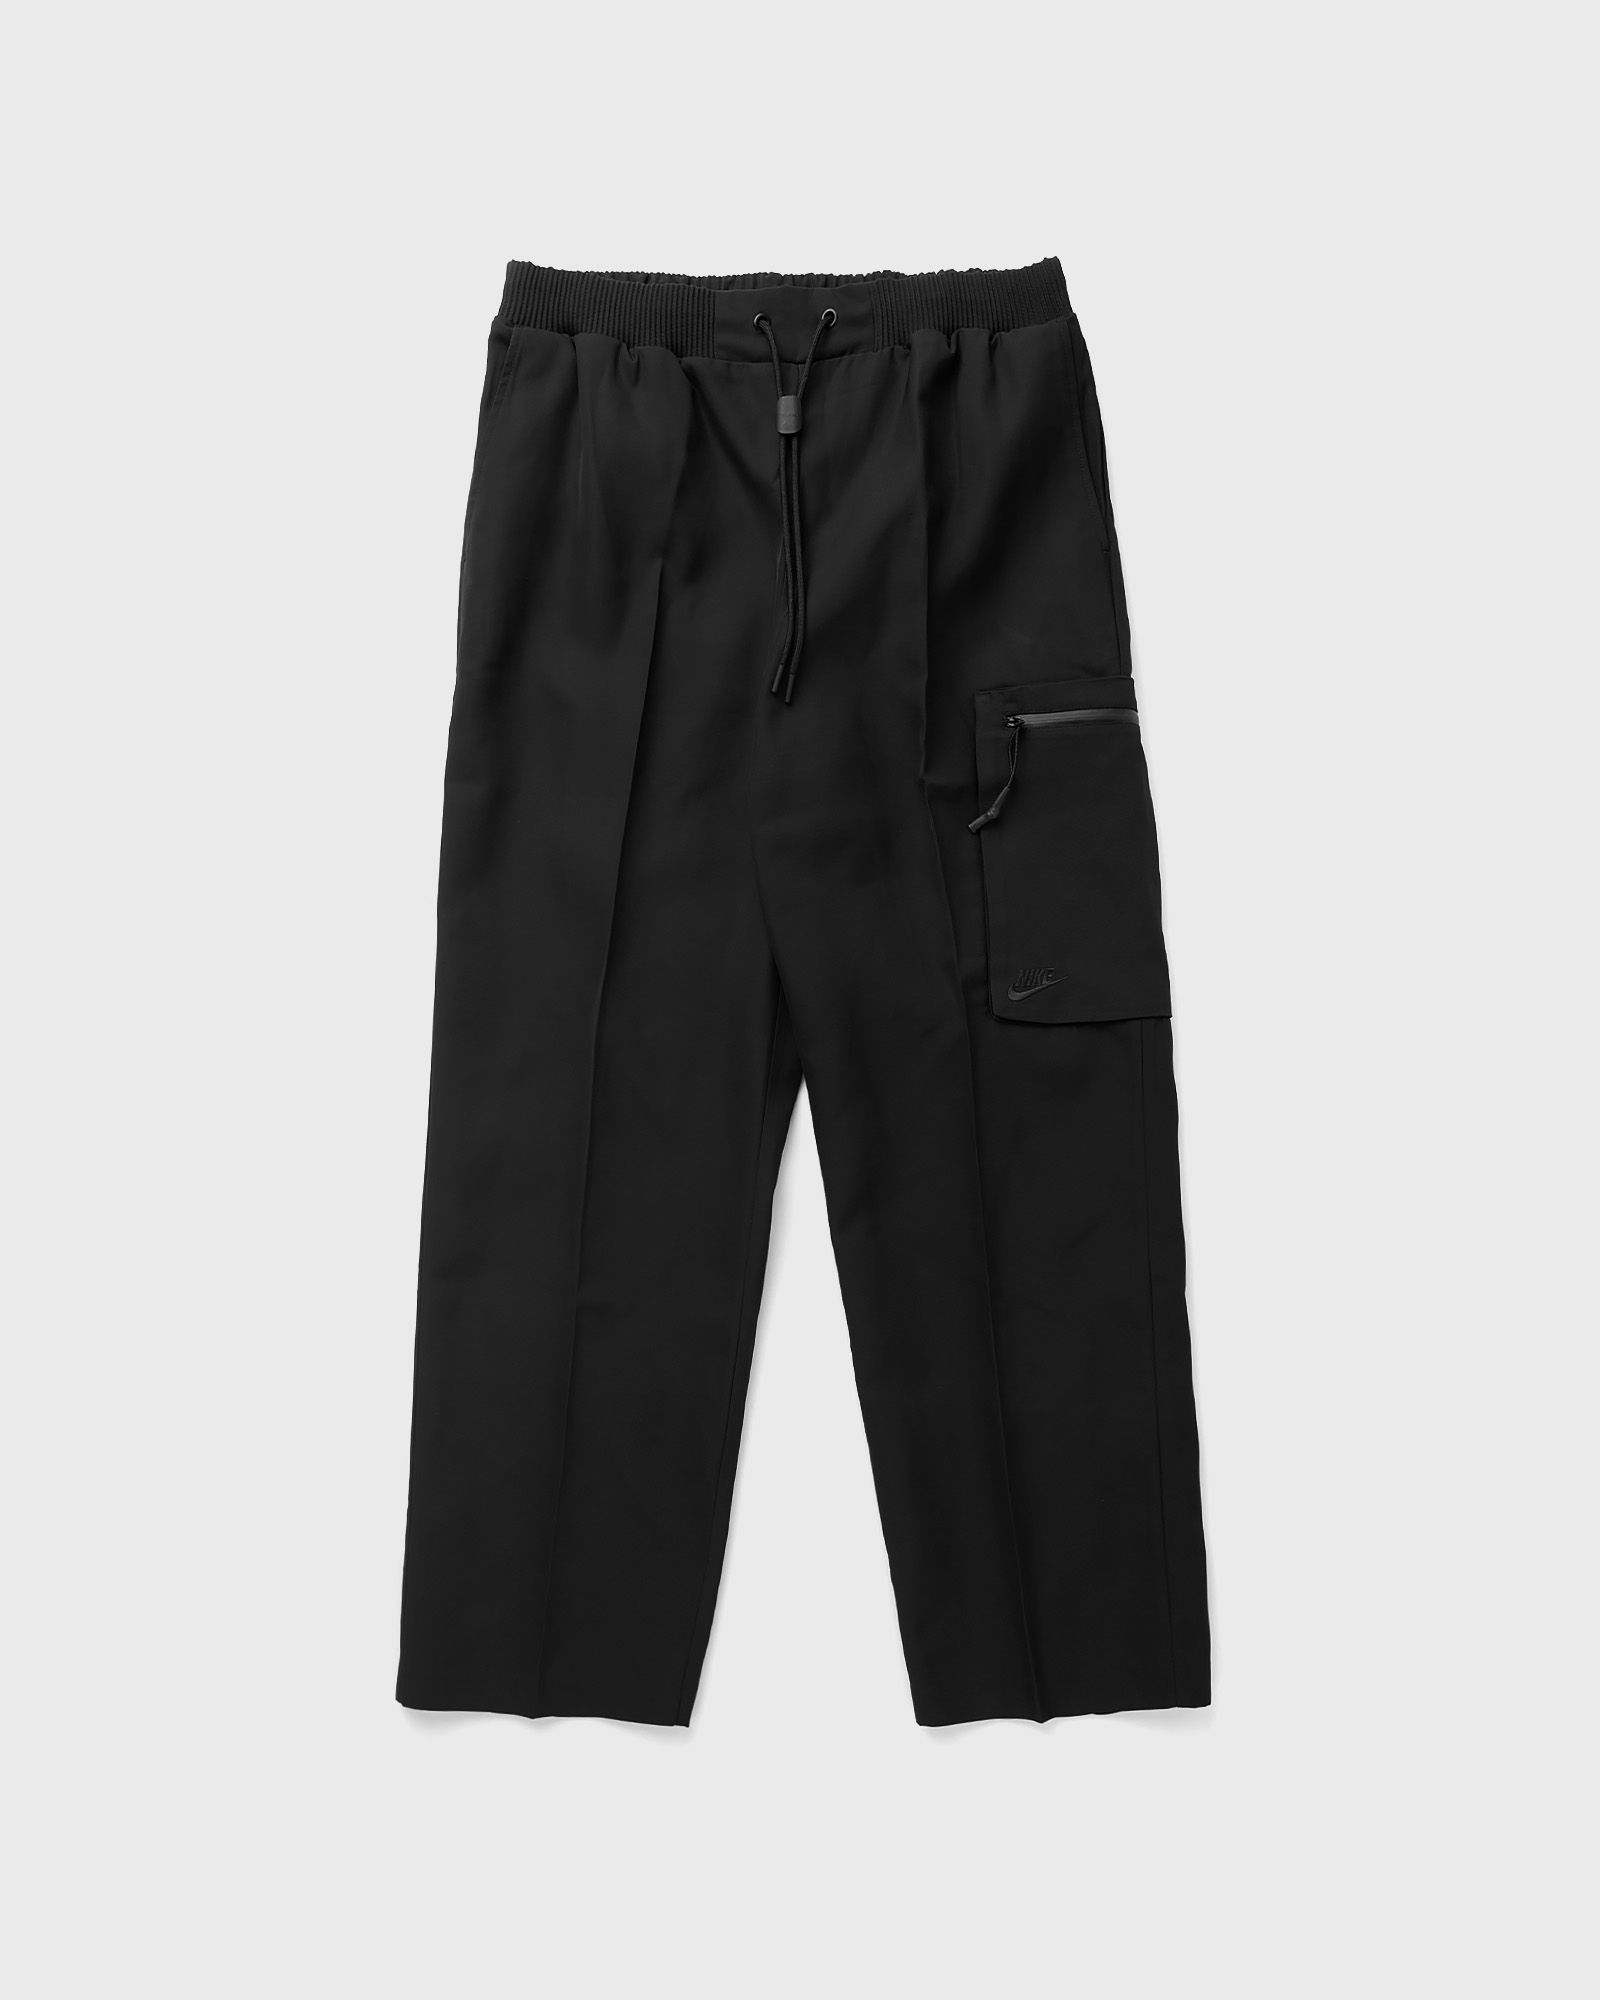 Nike - sportswear tech pack men's woven utility pants men cargo pants black in größe:xl